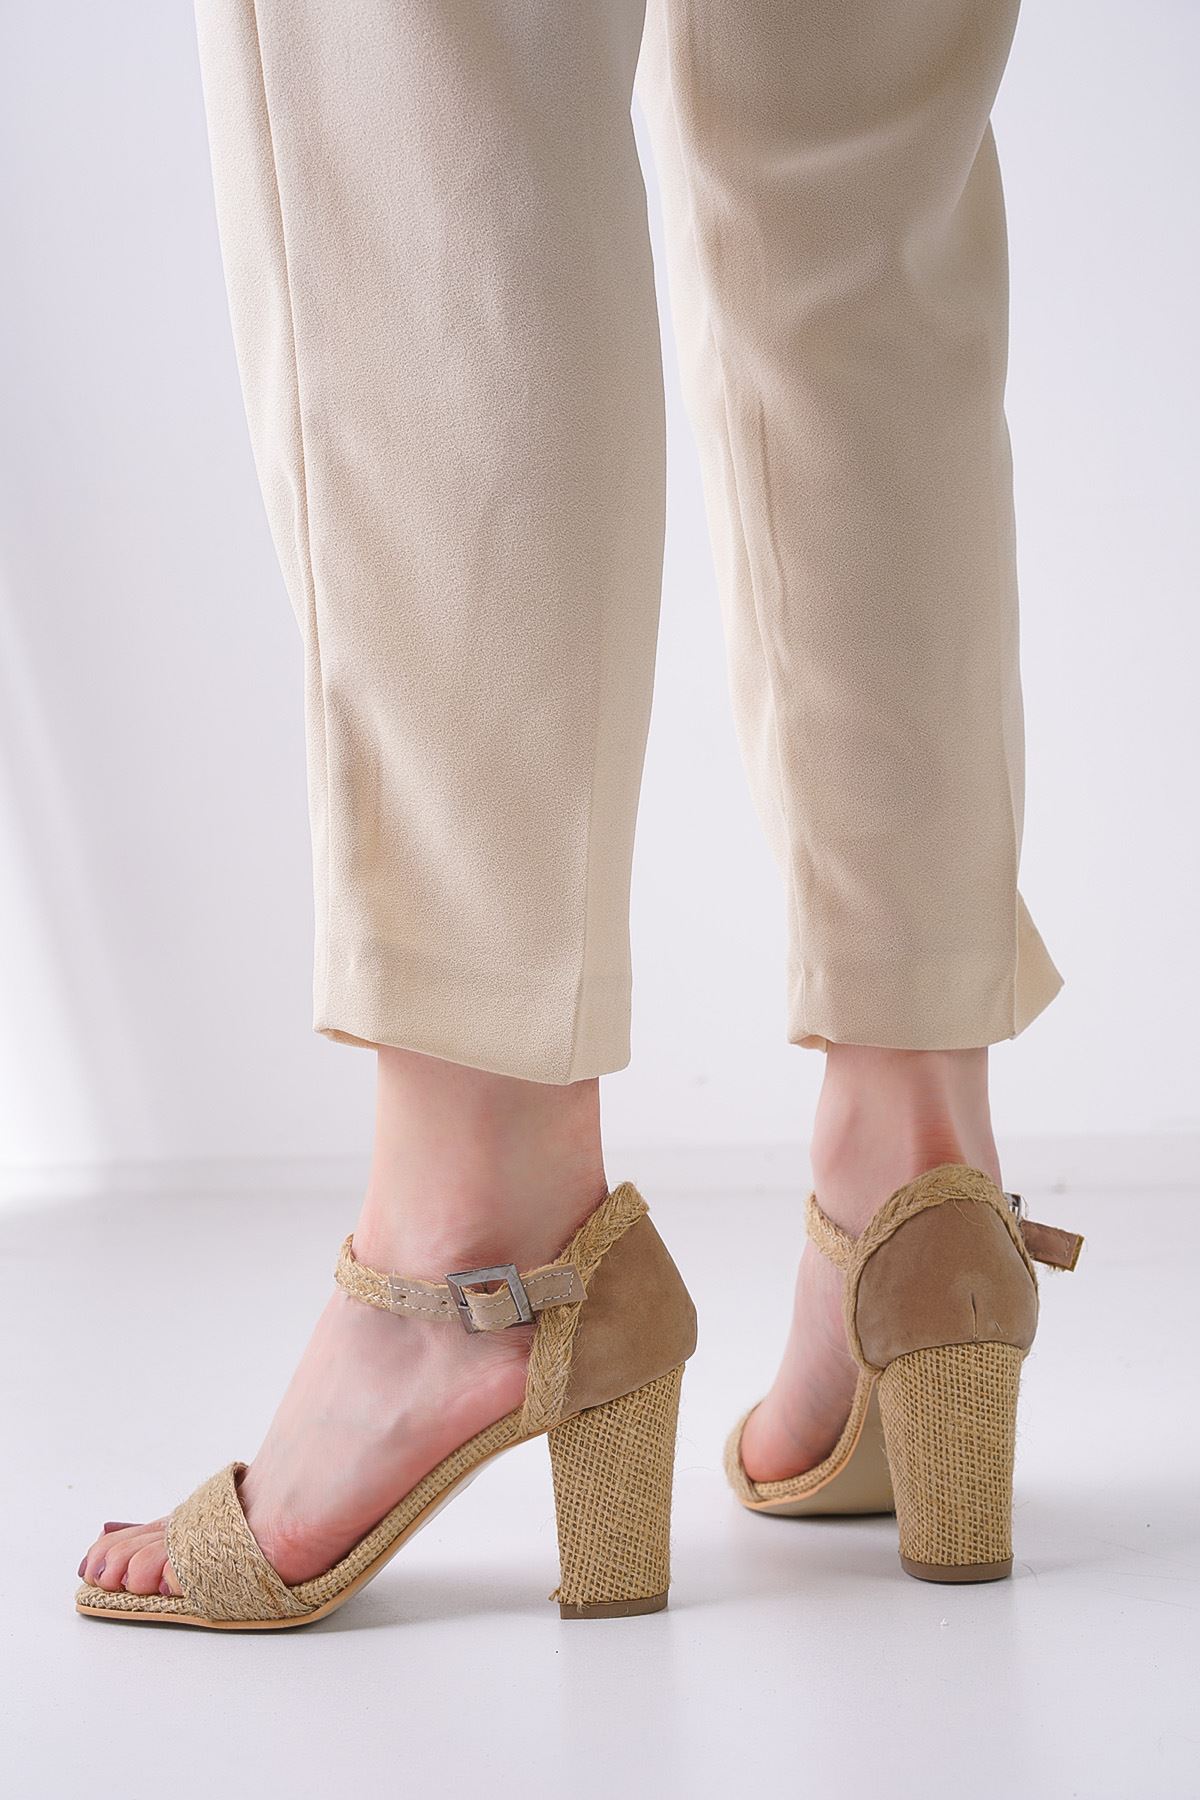 Janell Hasır Topuklu Kadın Ayakkabı